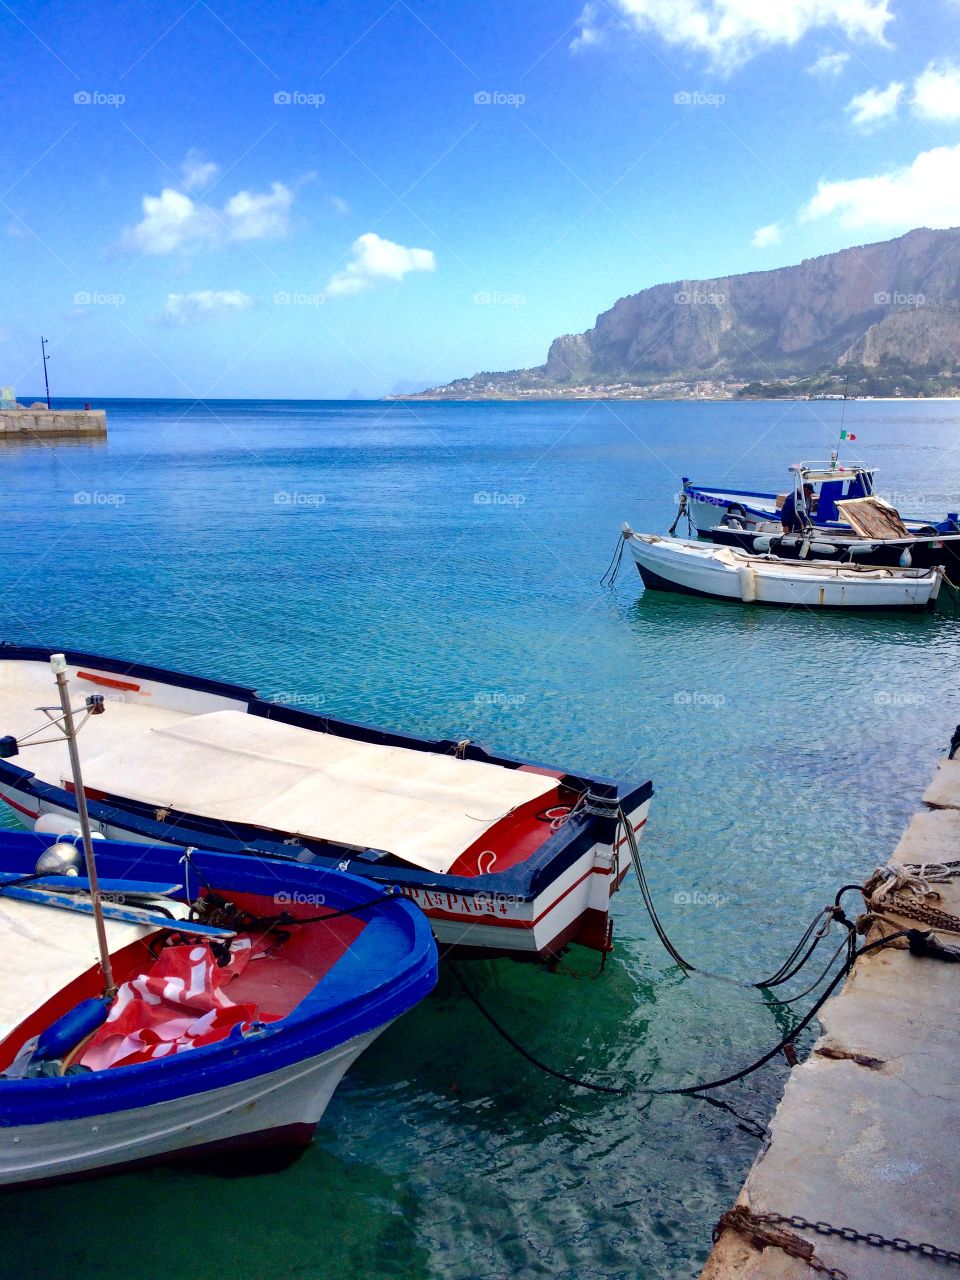 Boats docked in the bright blue Tyrrhenian Sea 